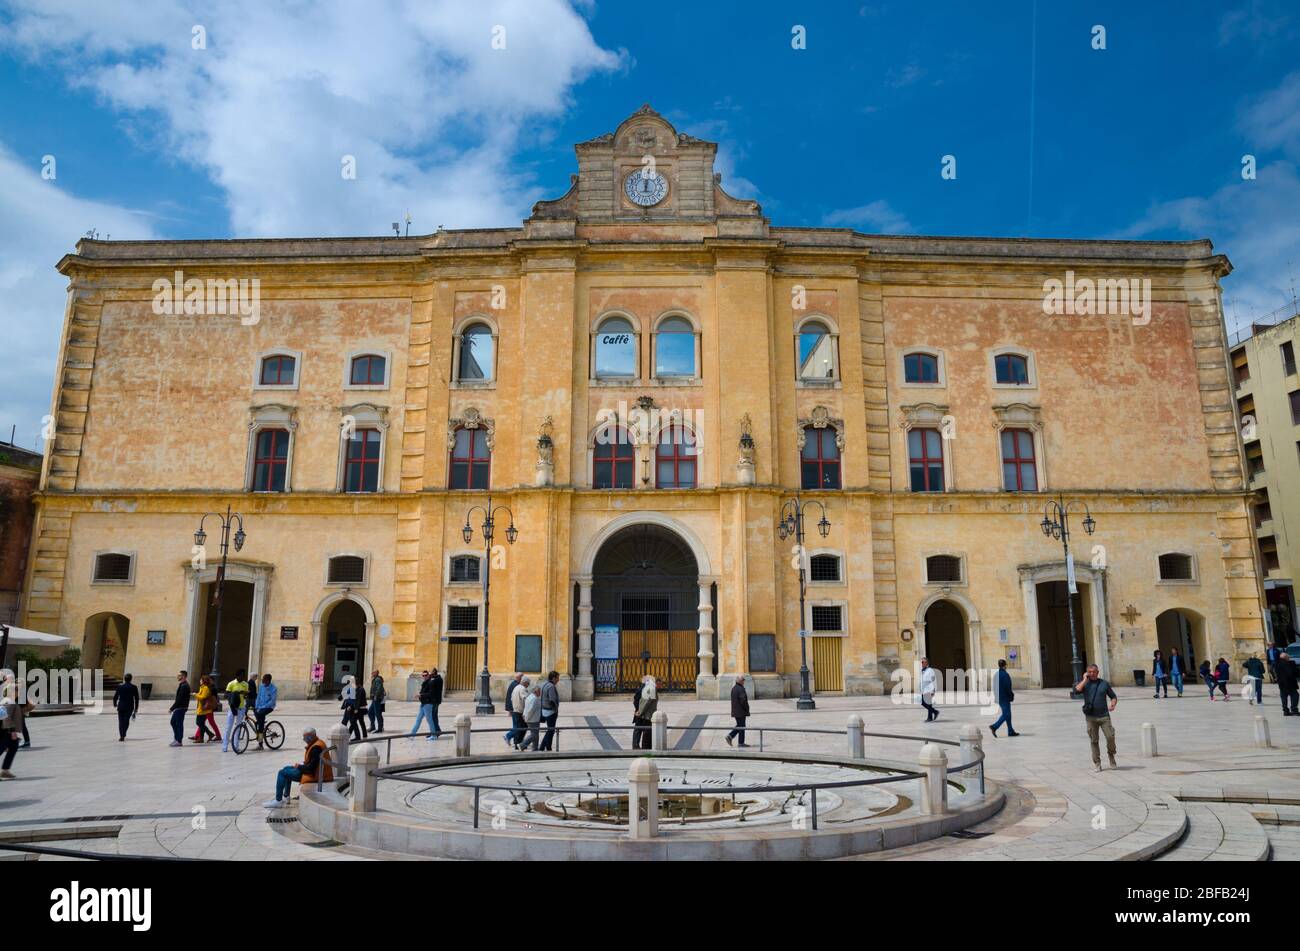 Matera, Italia - 6 maggio 2018: Persone a piedi vicino al Cinema Comunale Palazzo dell'Annunziata con orologio sulla facciata e fontana su Piazza Vittorio V. Foto Stock